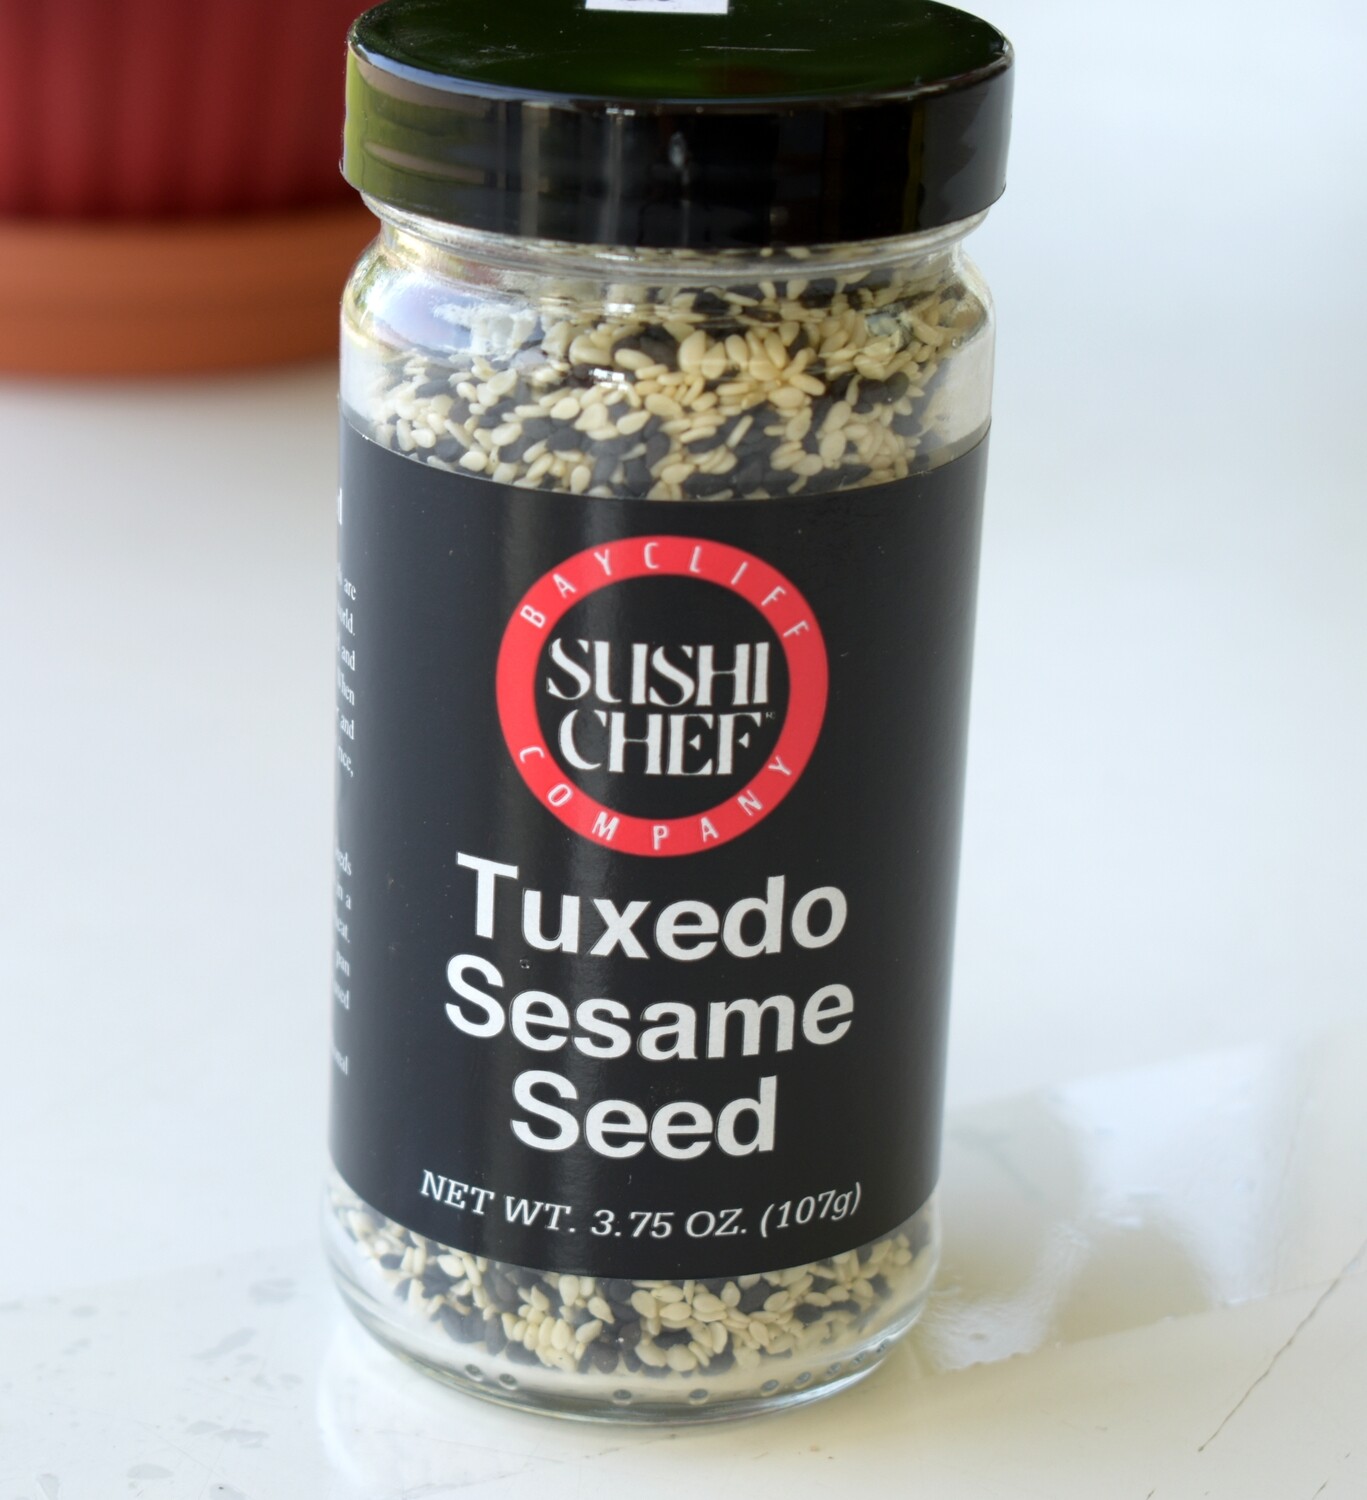 Sushi Chef Tuxedo Sesame Seeds